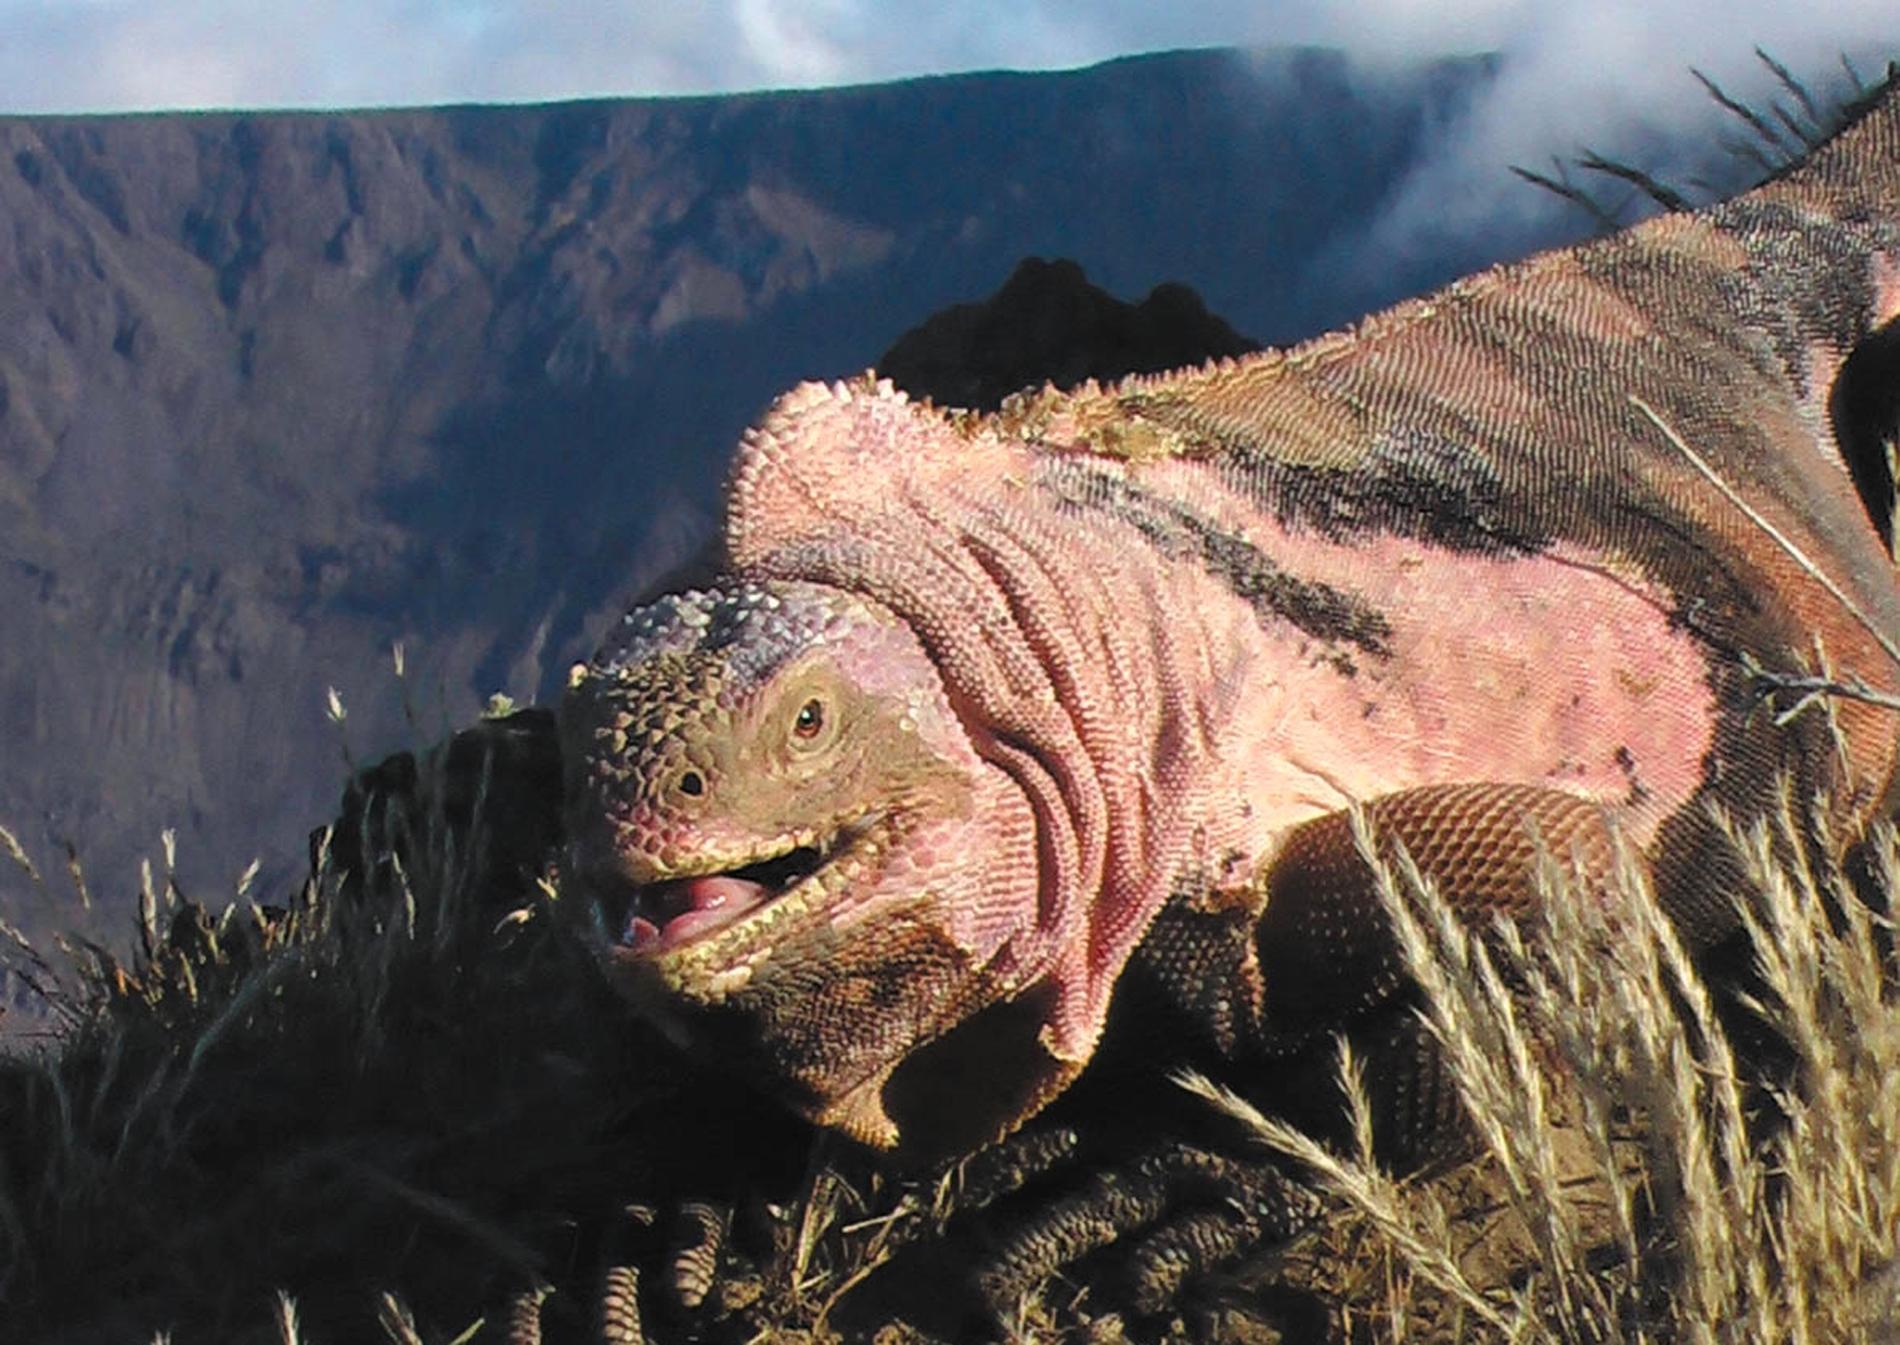 Den rosa leguanen lever på Isabela Island. Nu kan den hotas av vulkanutbrottet.